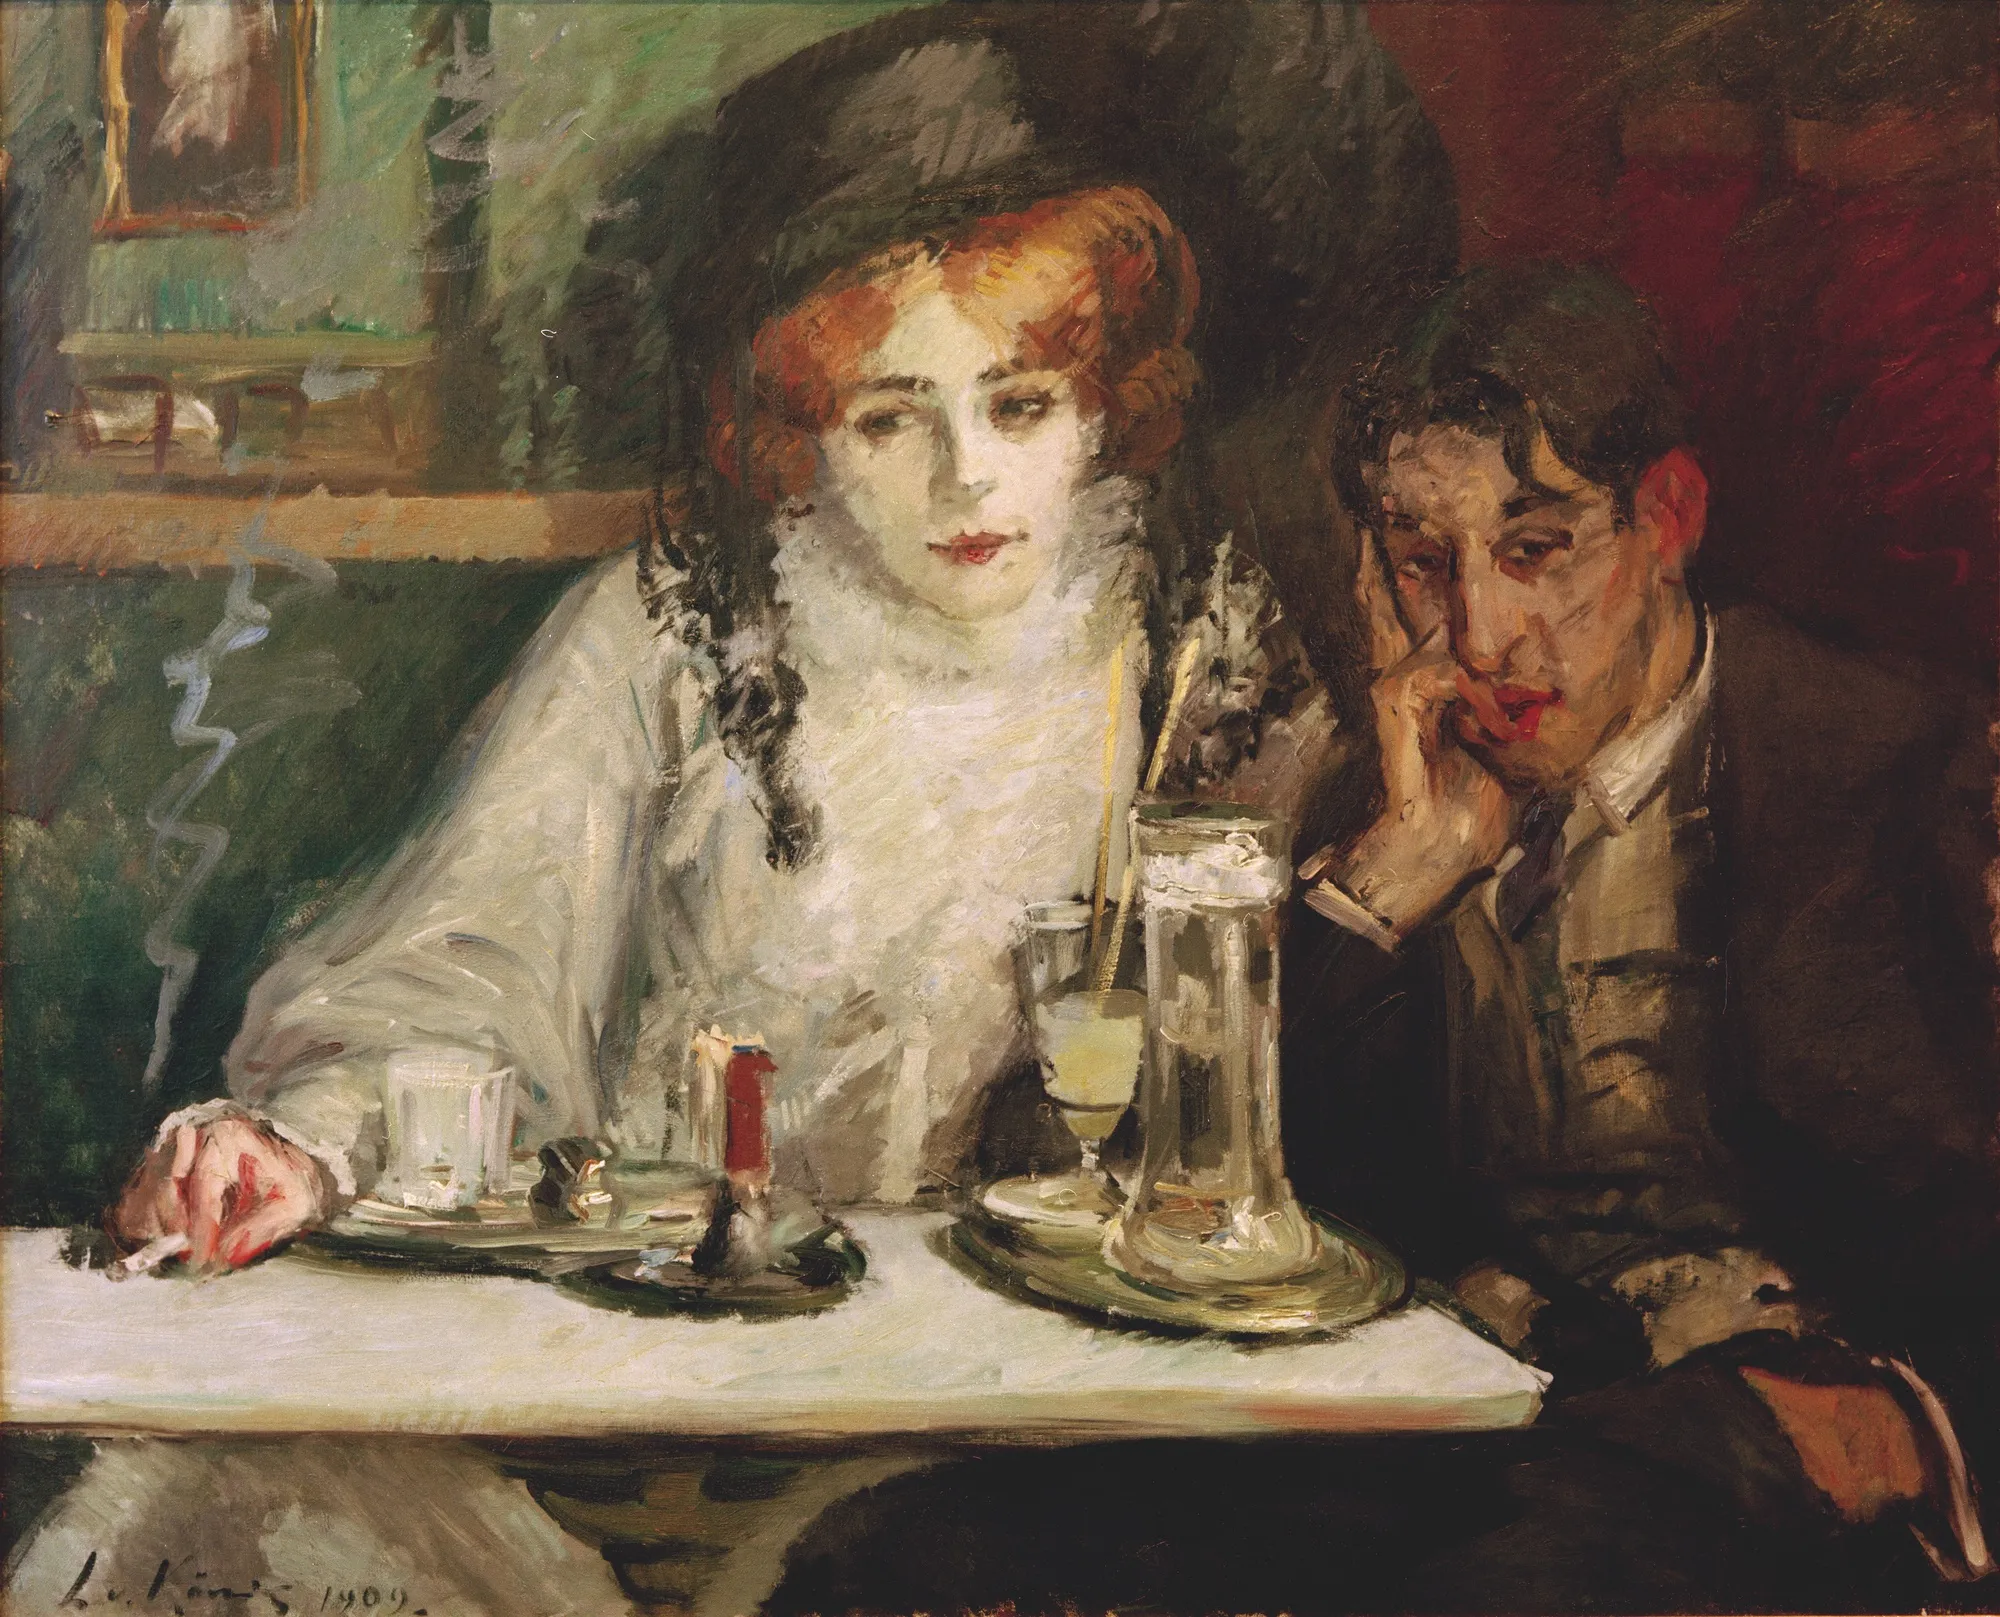 Leo von König, Bohème-Café, huile sur toile, 88× 108 cm, Collection privée, 1909.